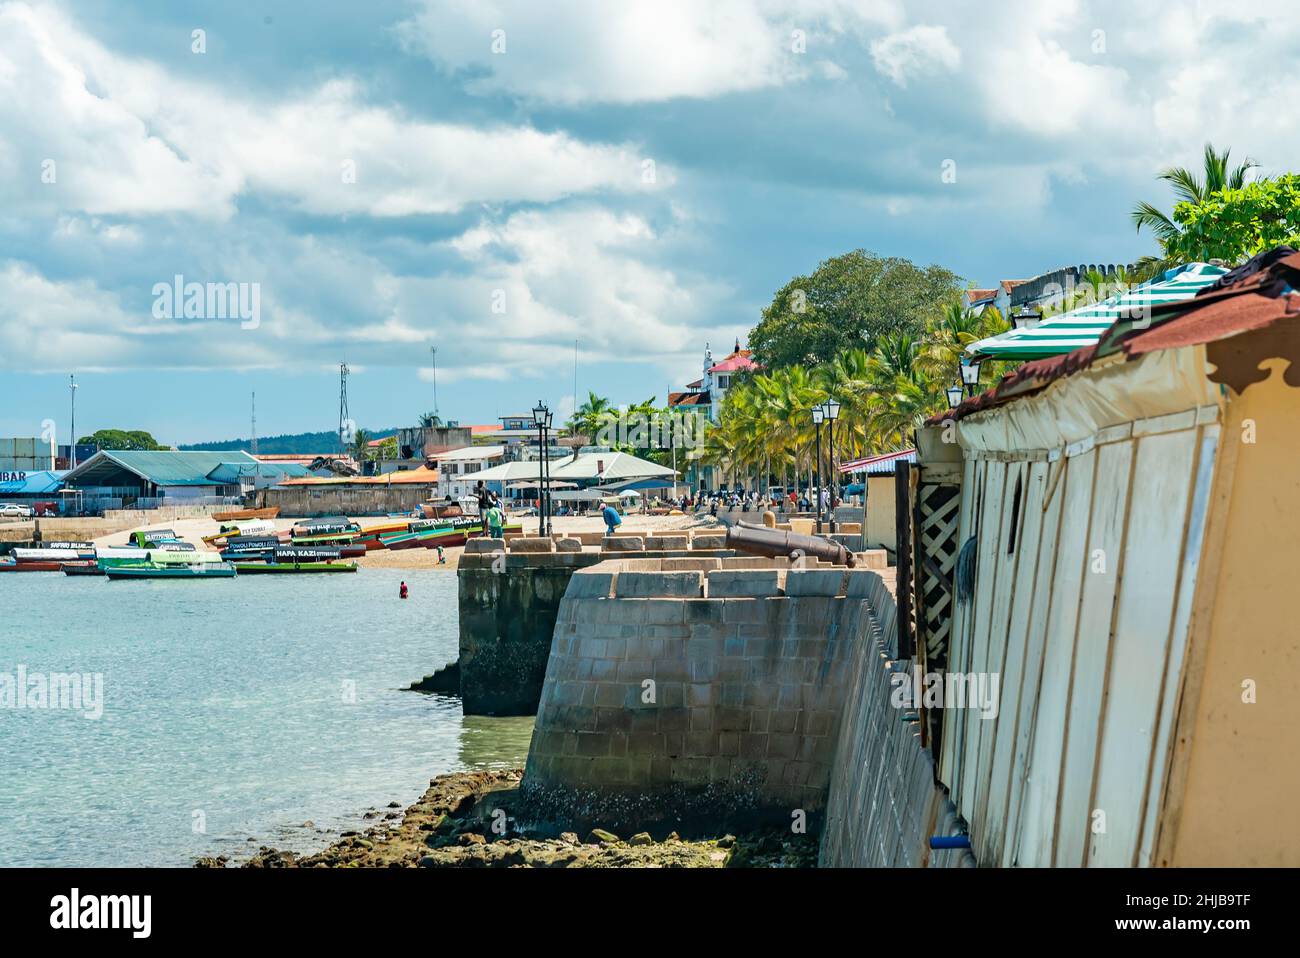 STONE TOWN, ZANZIBAR - DECEMBER 22, 2021: Boats near beach in a port of Stone Town, Zanzibar, Tanzania Stock Photo